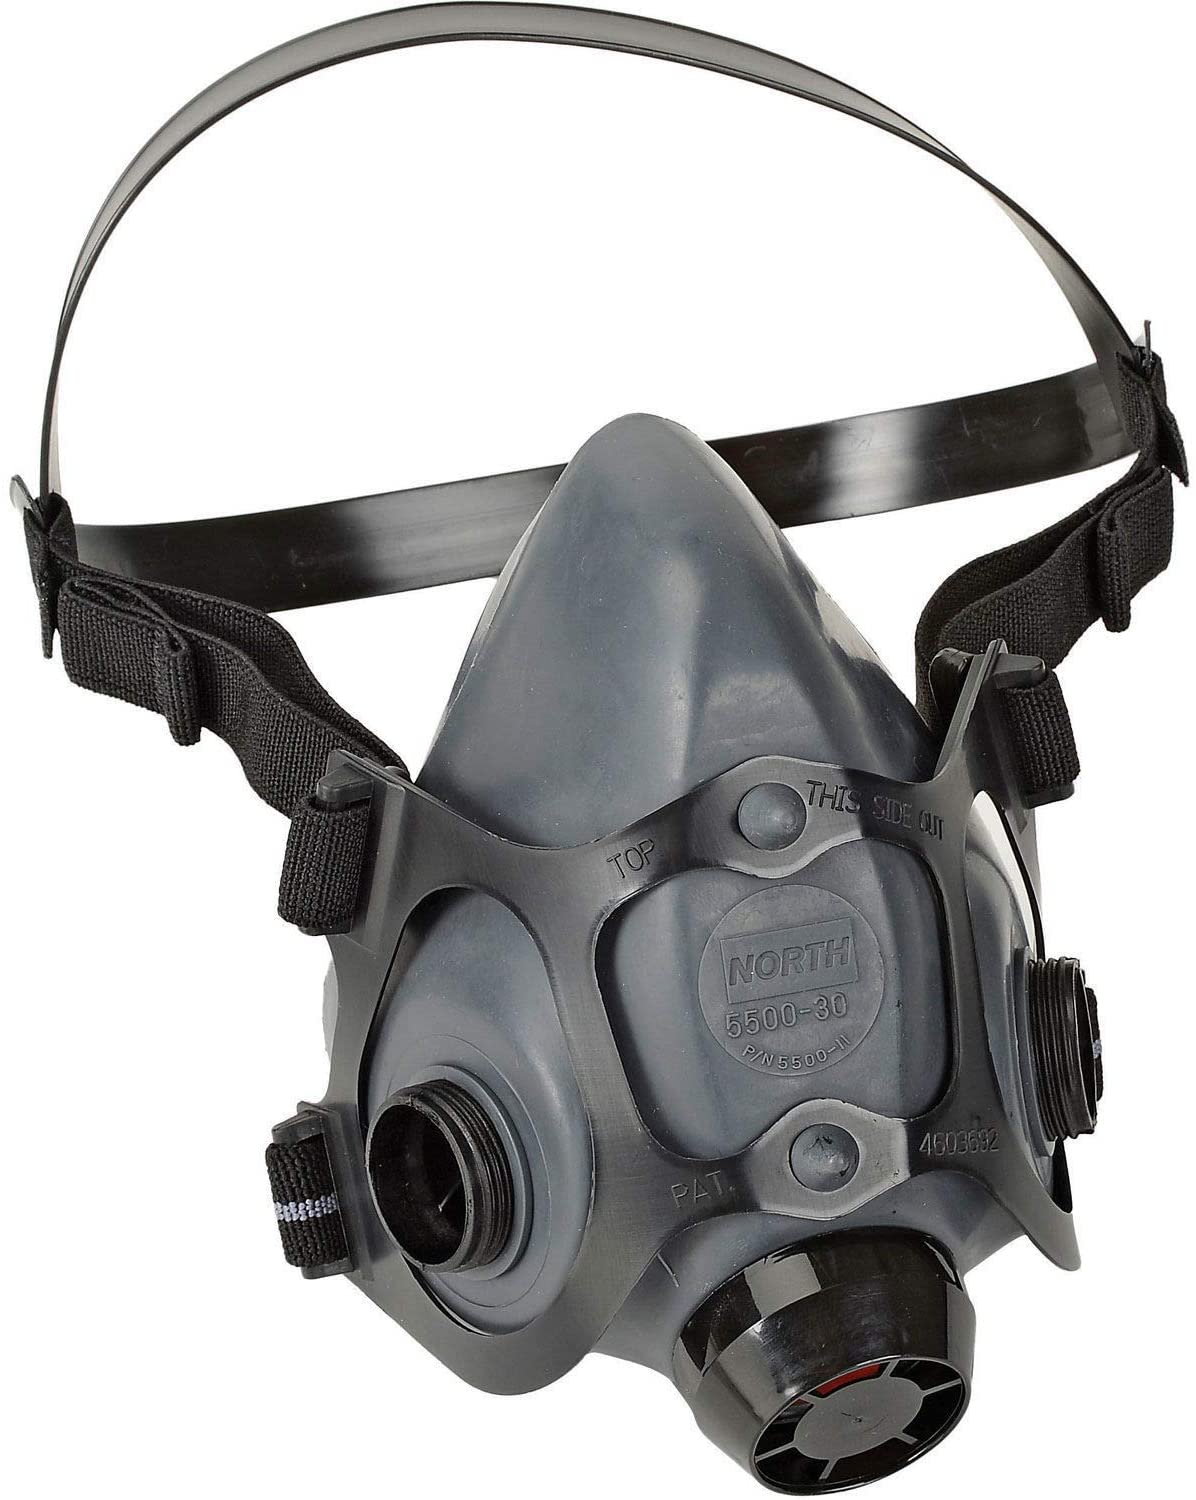 Demi-masque respiratoire Honeywell North série 5500, grand - 5500-30 L